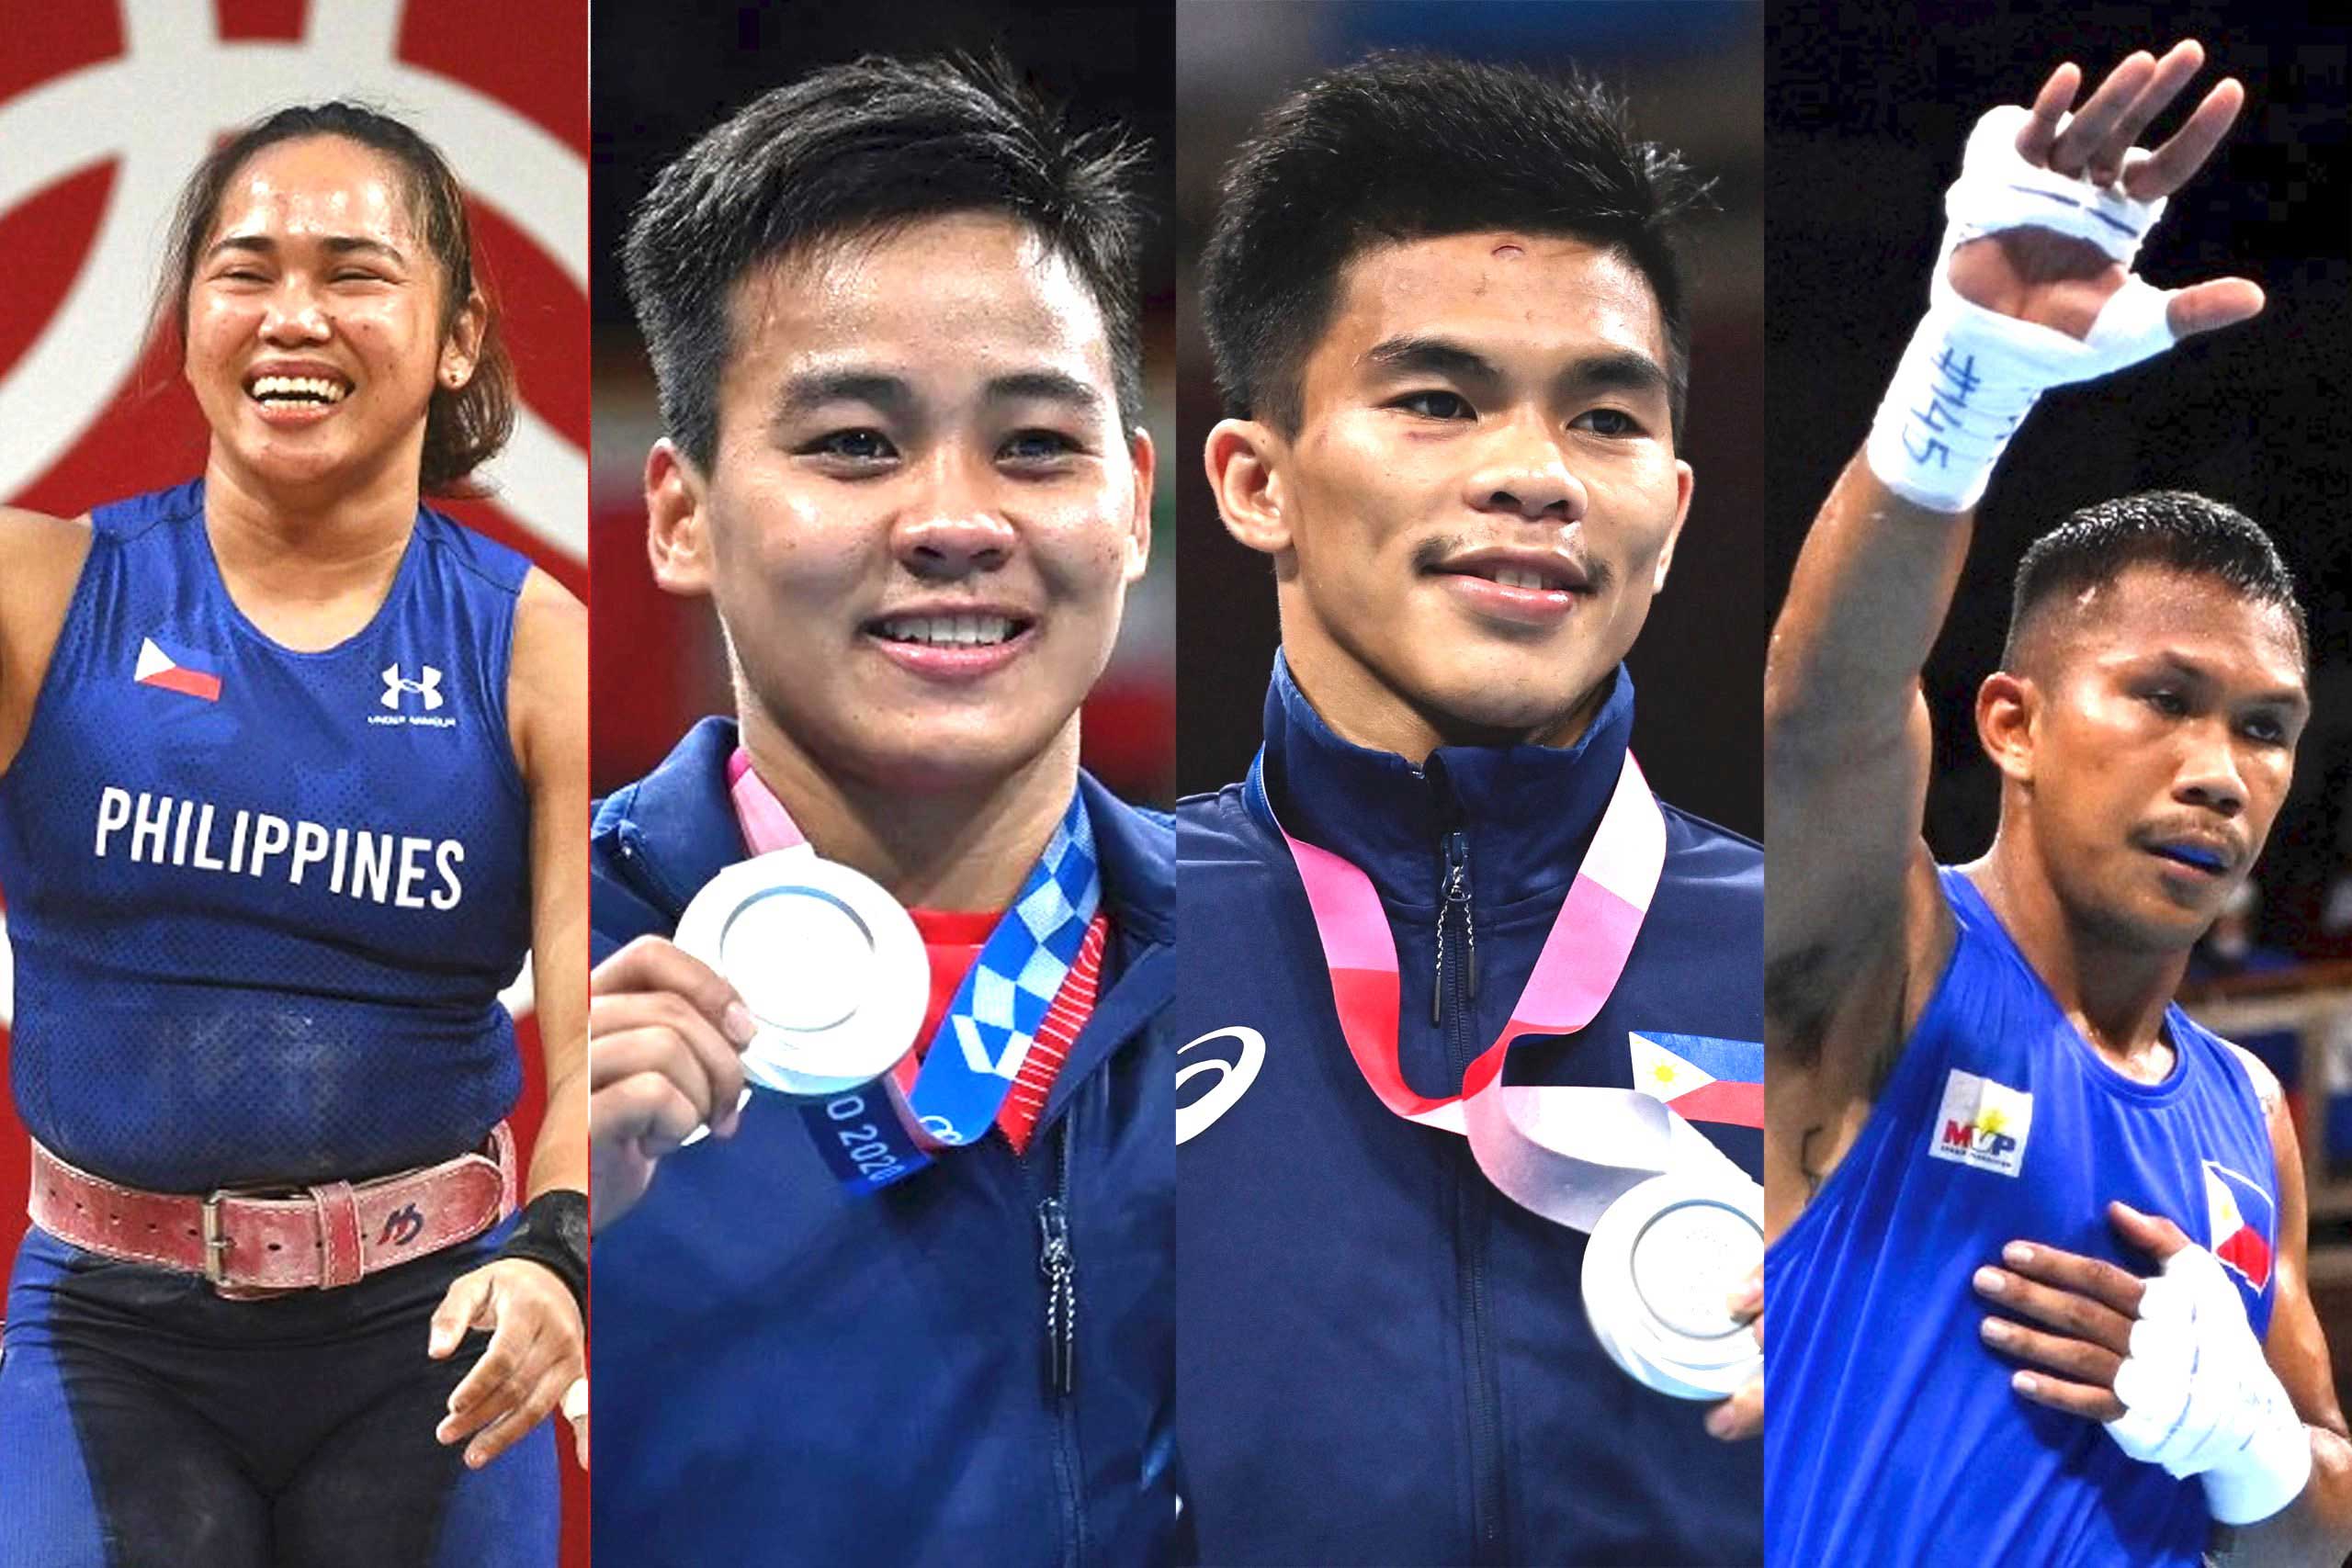 The Filipino at the Olympics